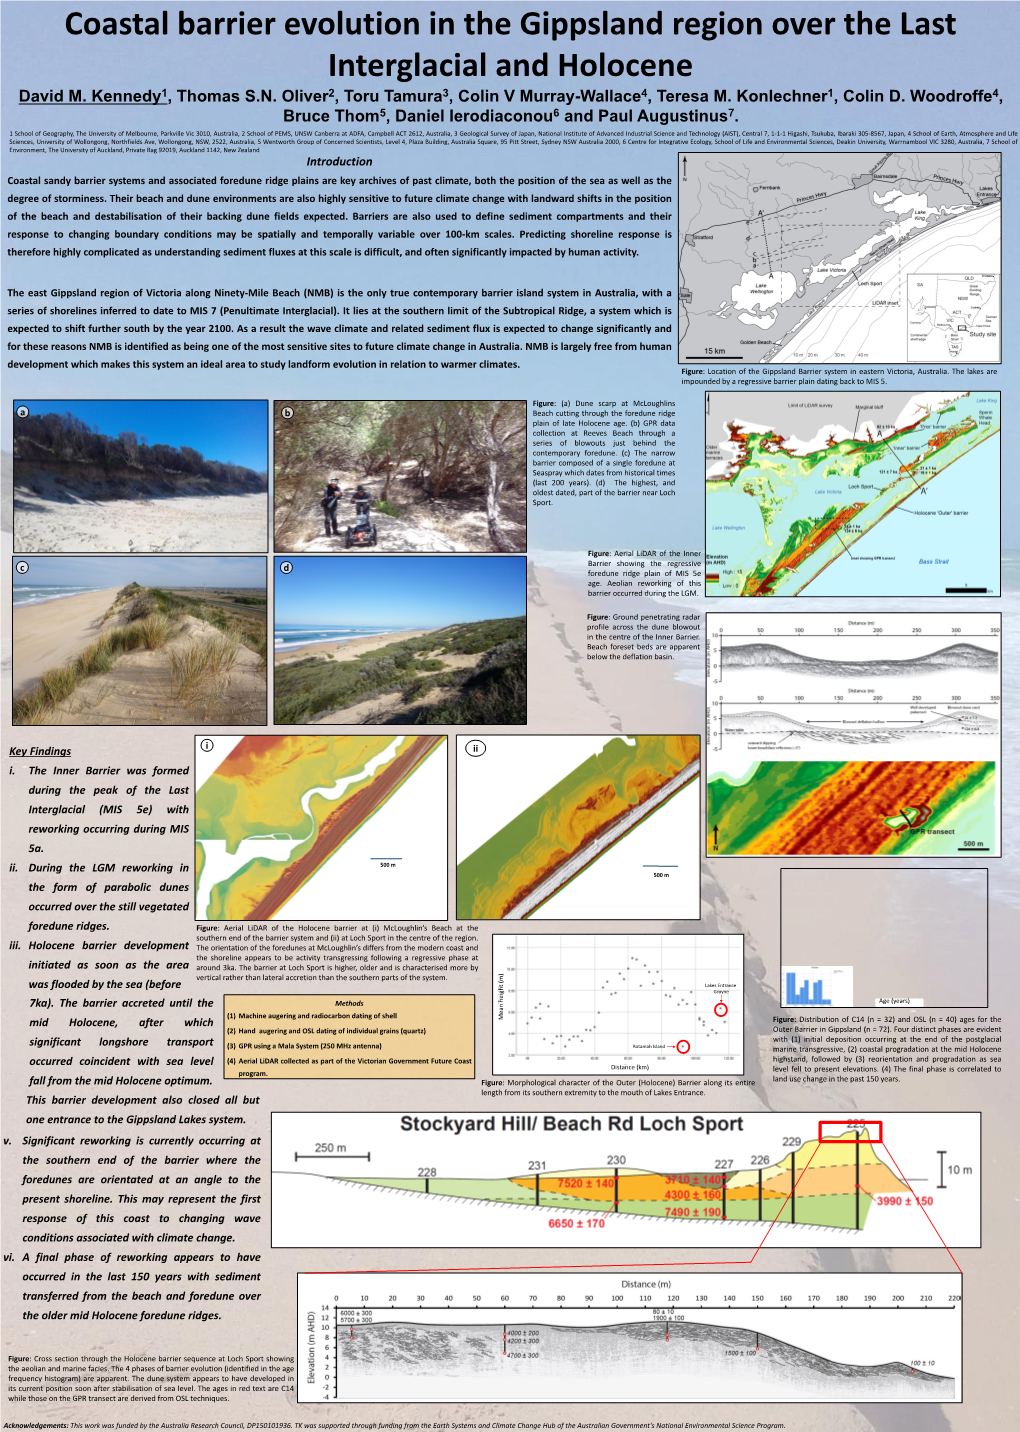 Coastal Barrier Evolution in Gippsland Region Over The